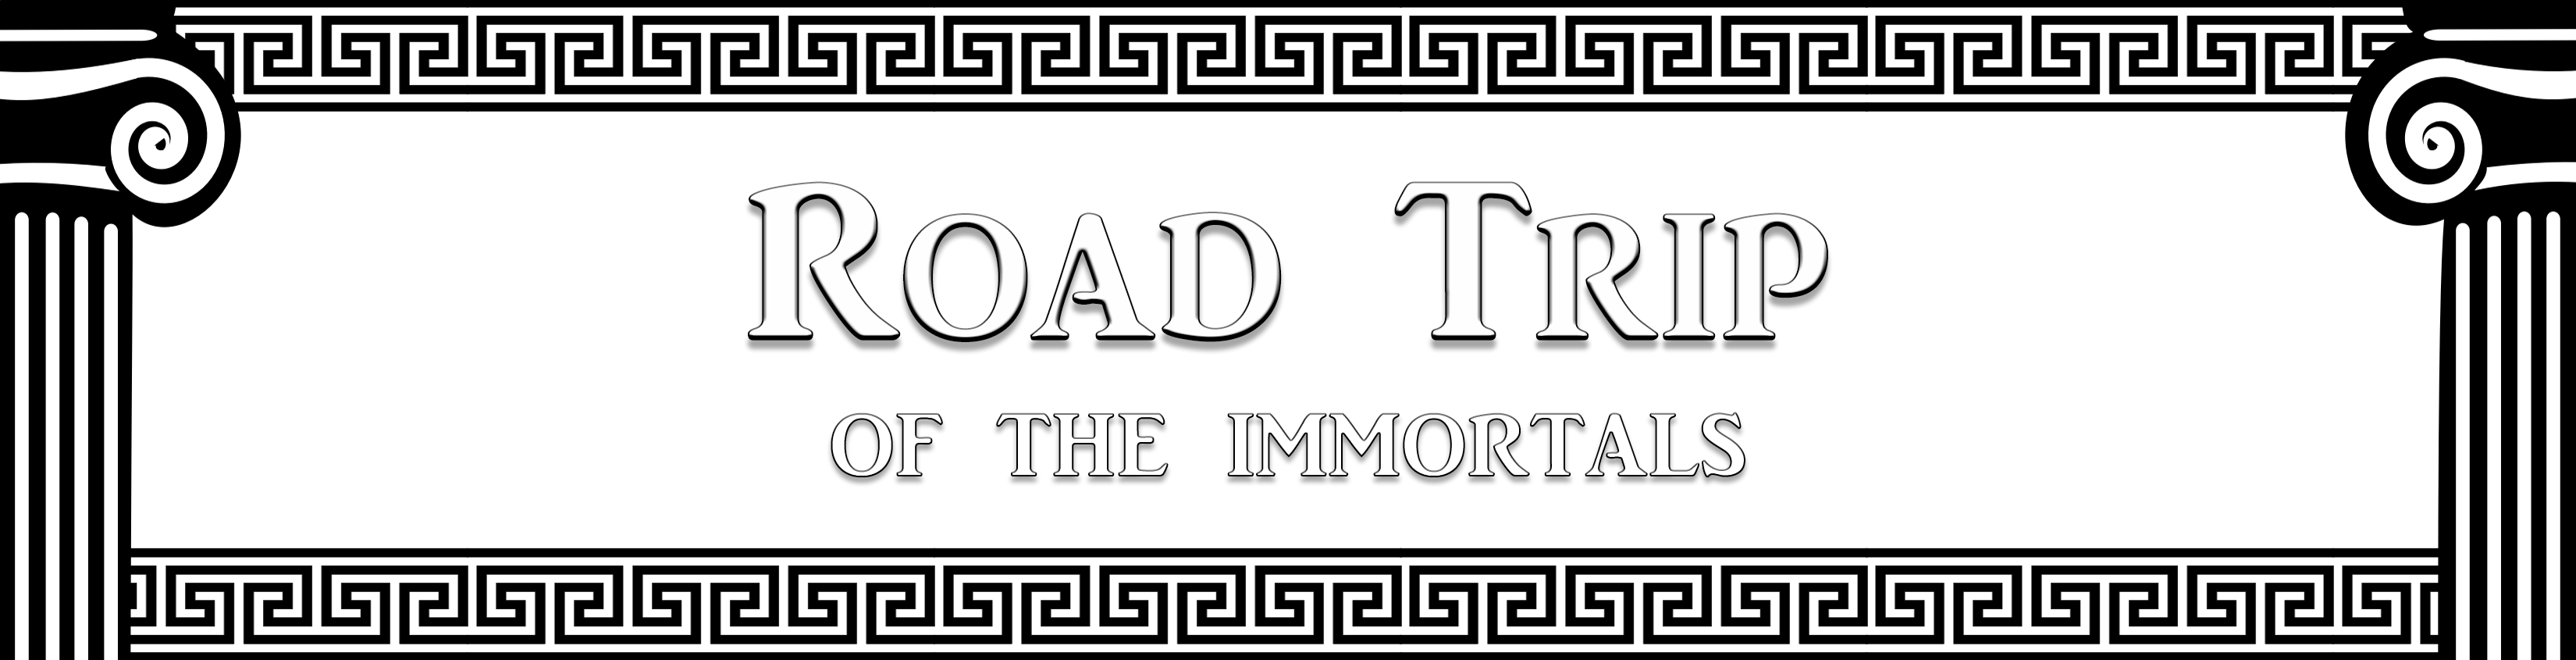 Road Trip of the Immortals